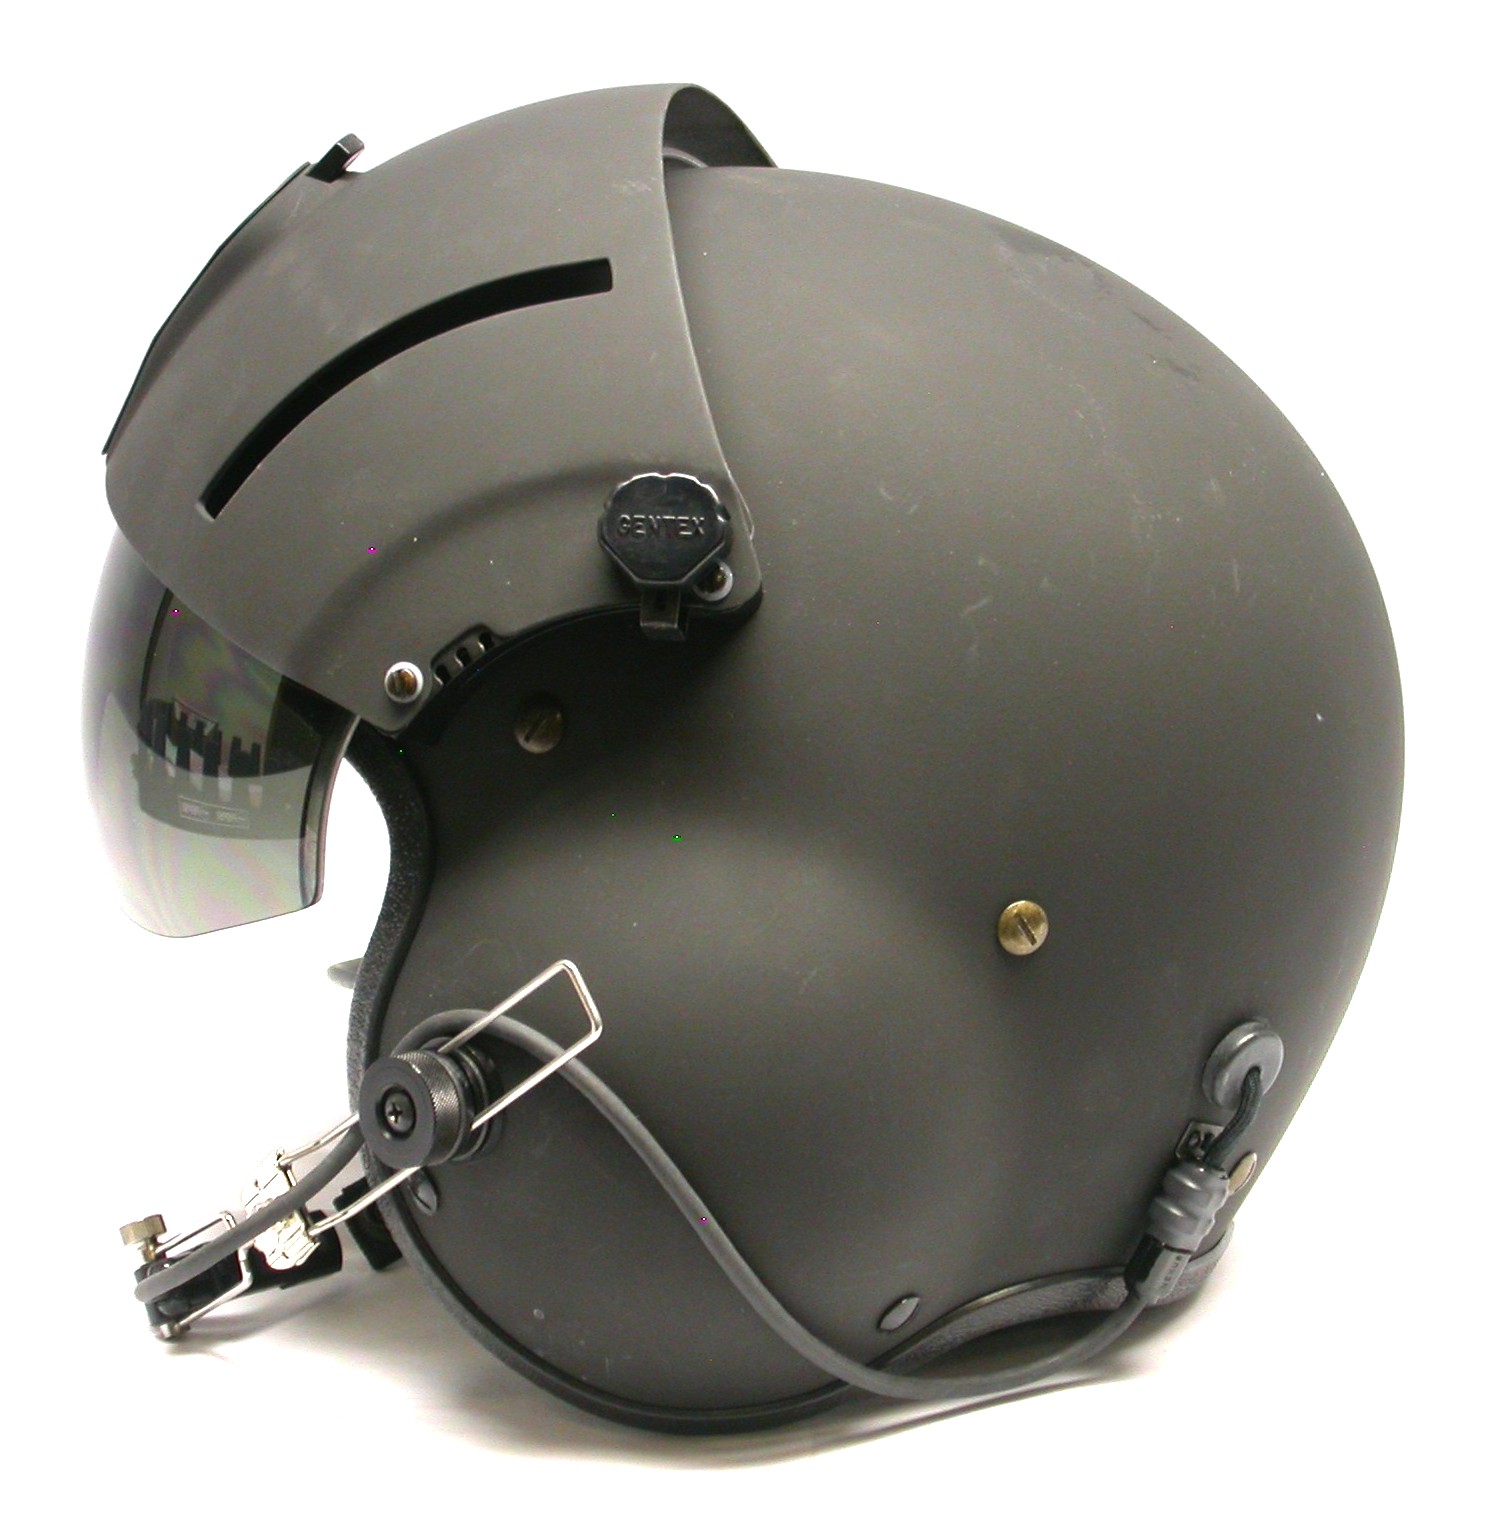  Replacement SPH-4B, SPH-5, HGU-56 Flight Helmet